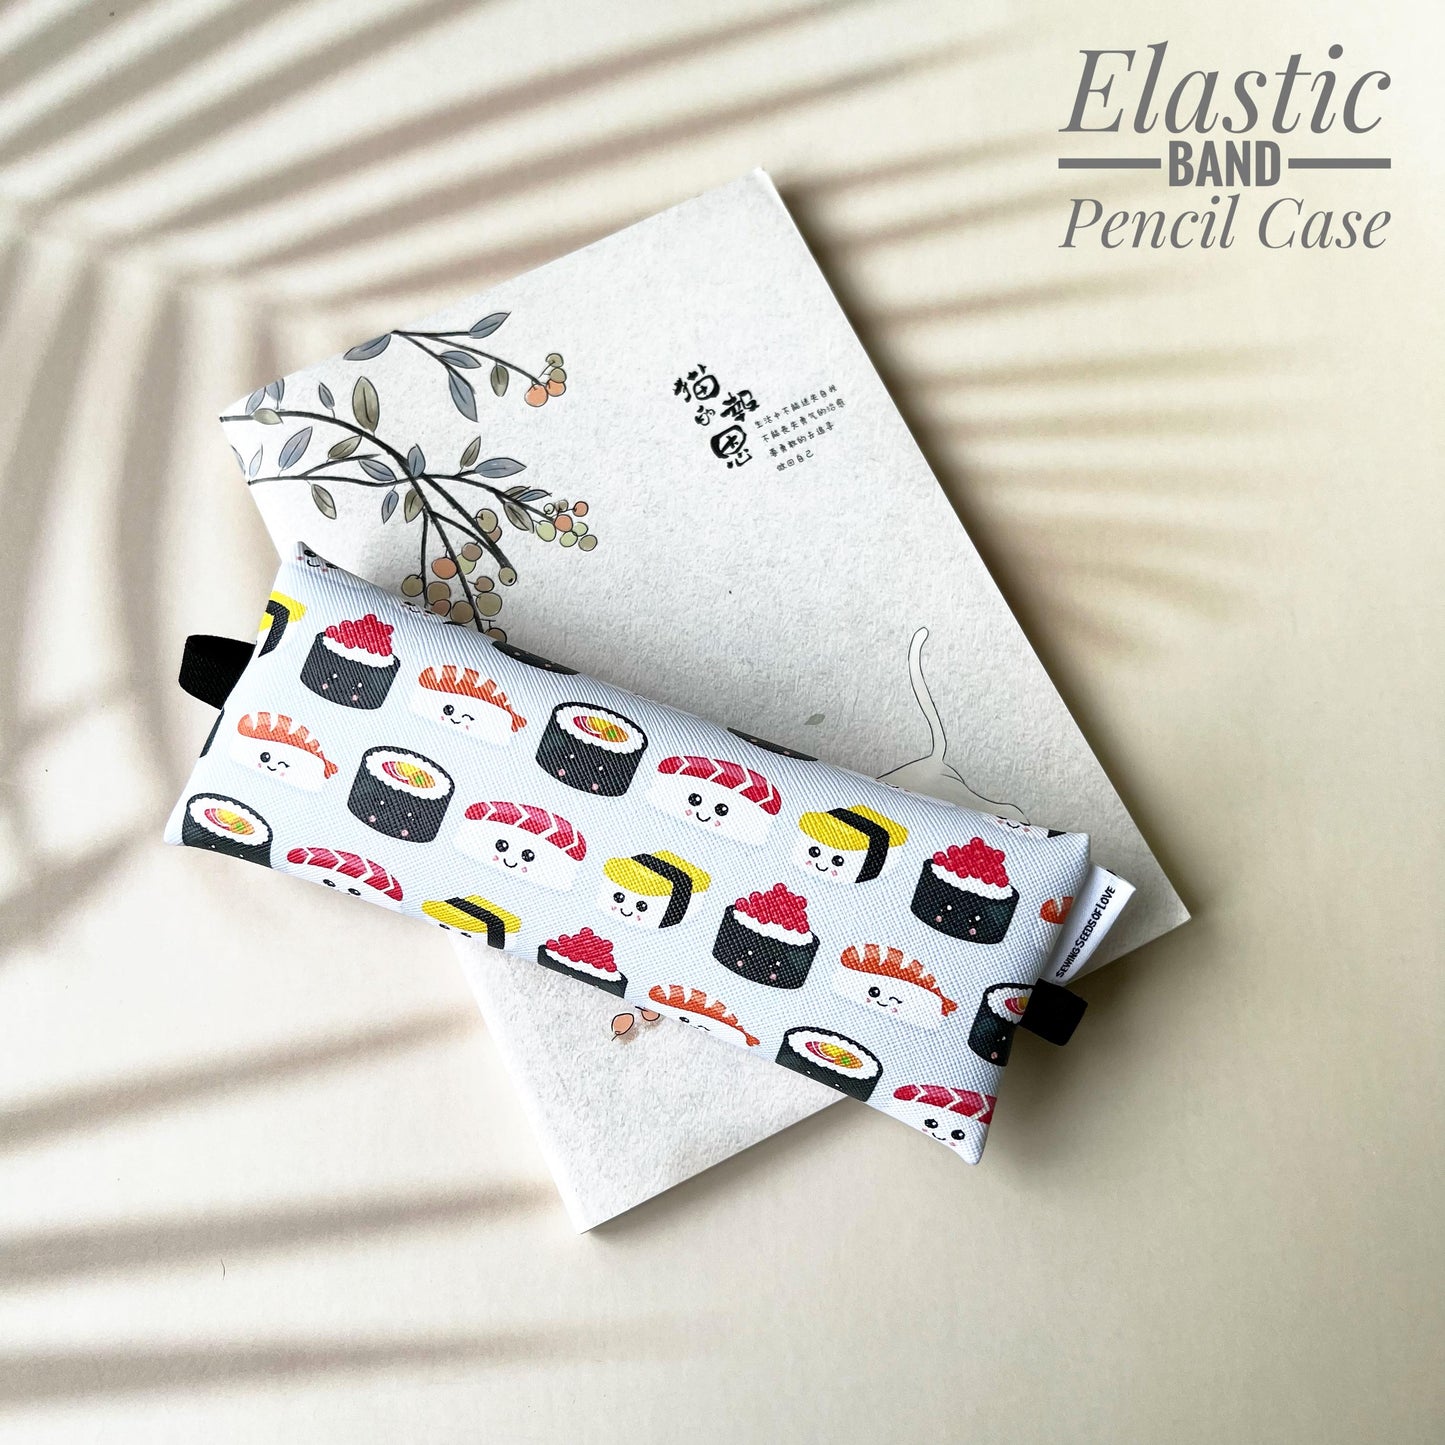 Elastic Band Pencil Case - EBPC32